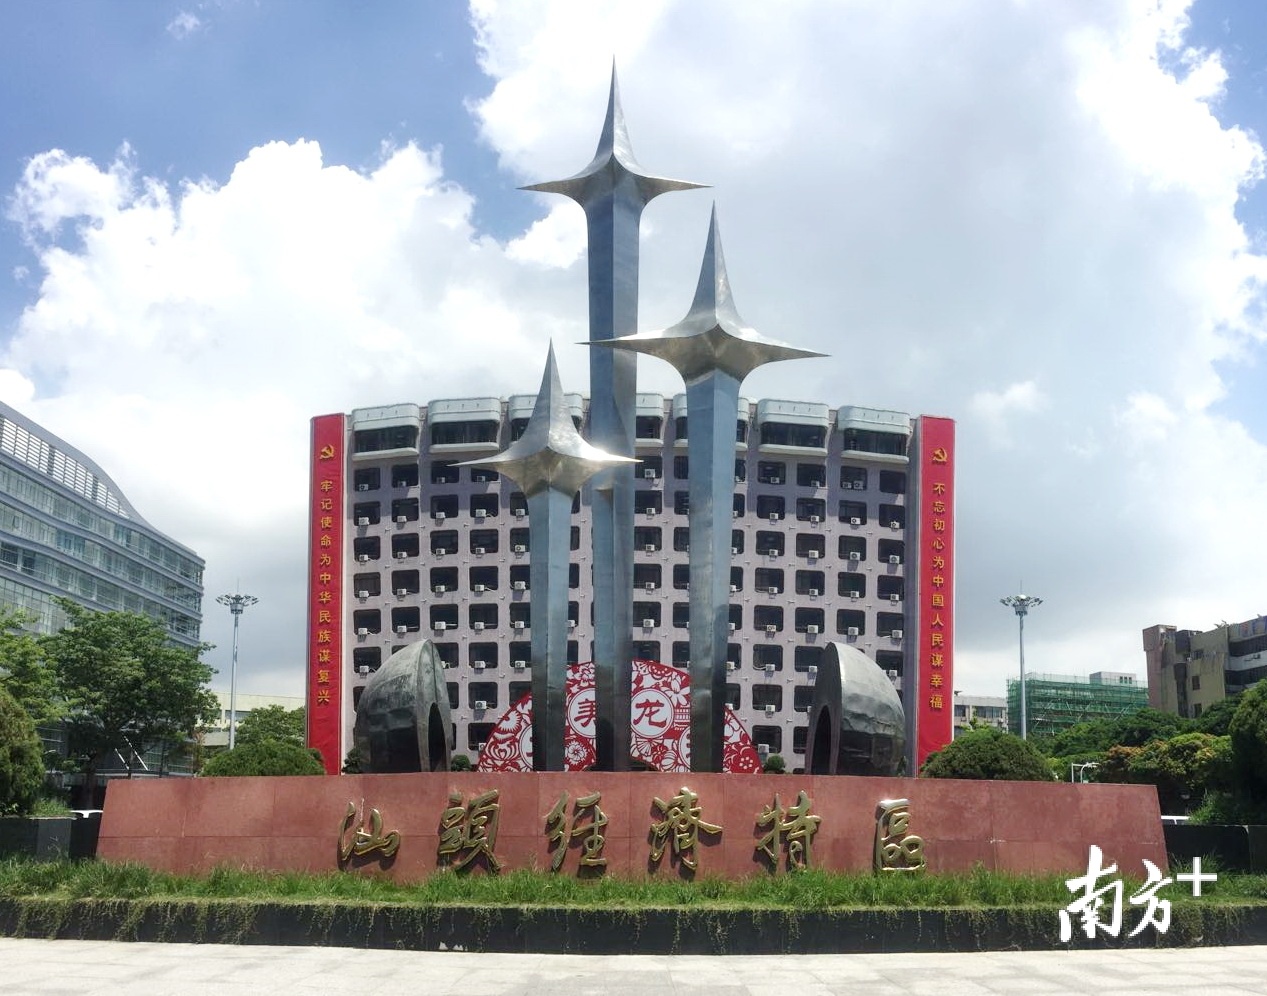 位于龙湖区政府前广场中央，矗立着汕头经济特区标志性雕塑——“升腾”。 黄嘉锋 摄